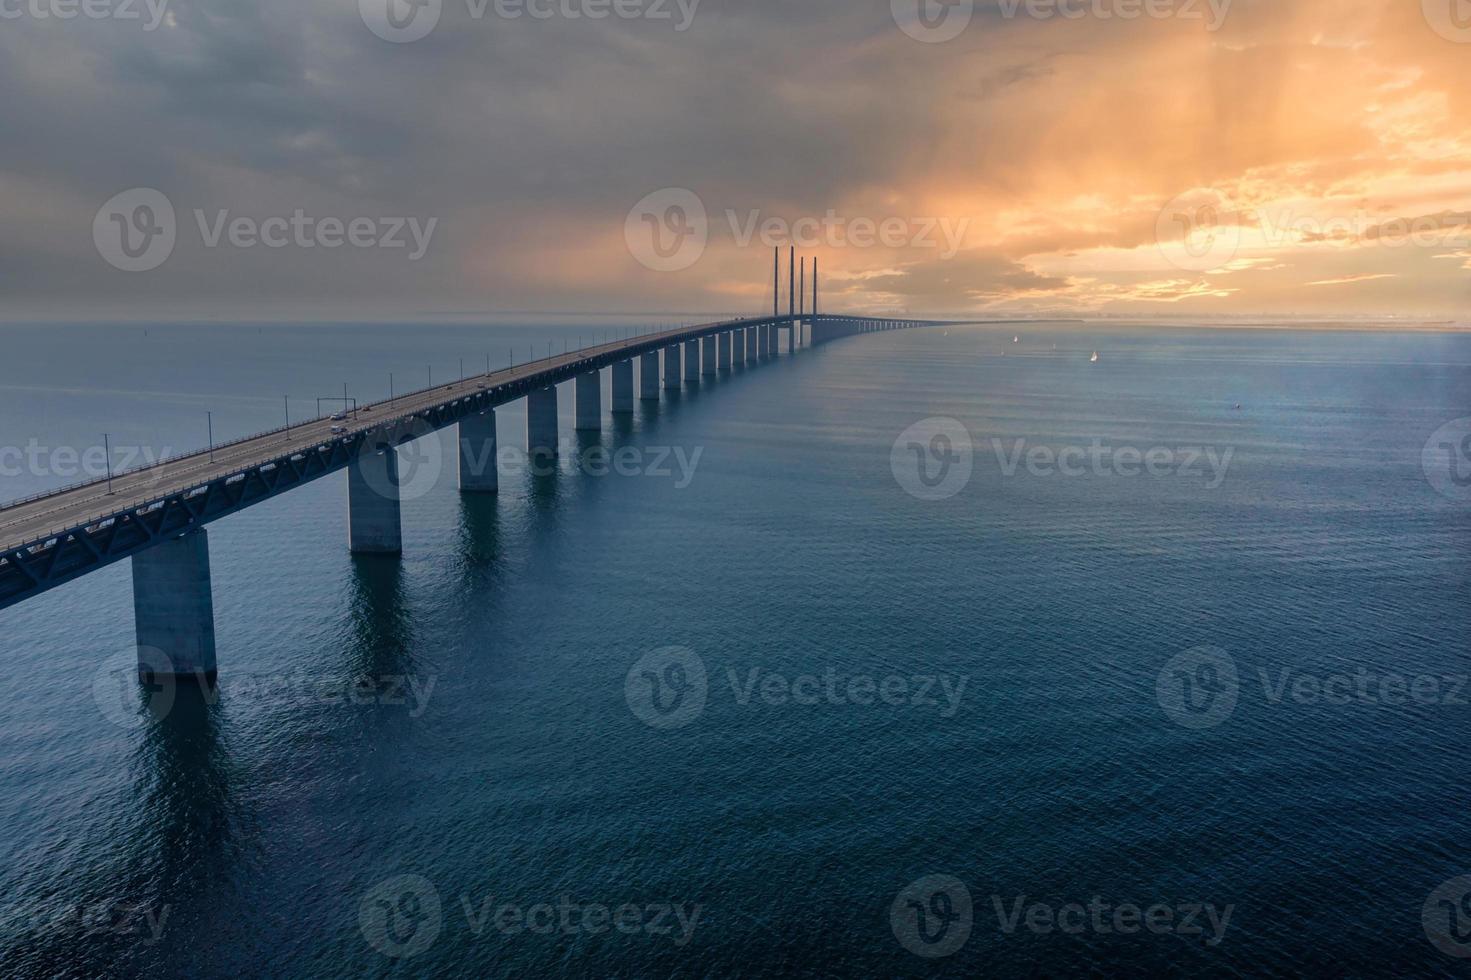 panoramisch luchtfoto van de oresundsbron-brug tussen denemarken en zweden. oresund brug uitzicht bij zonsondergang foto